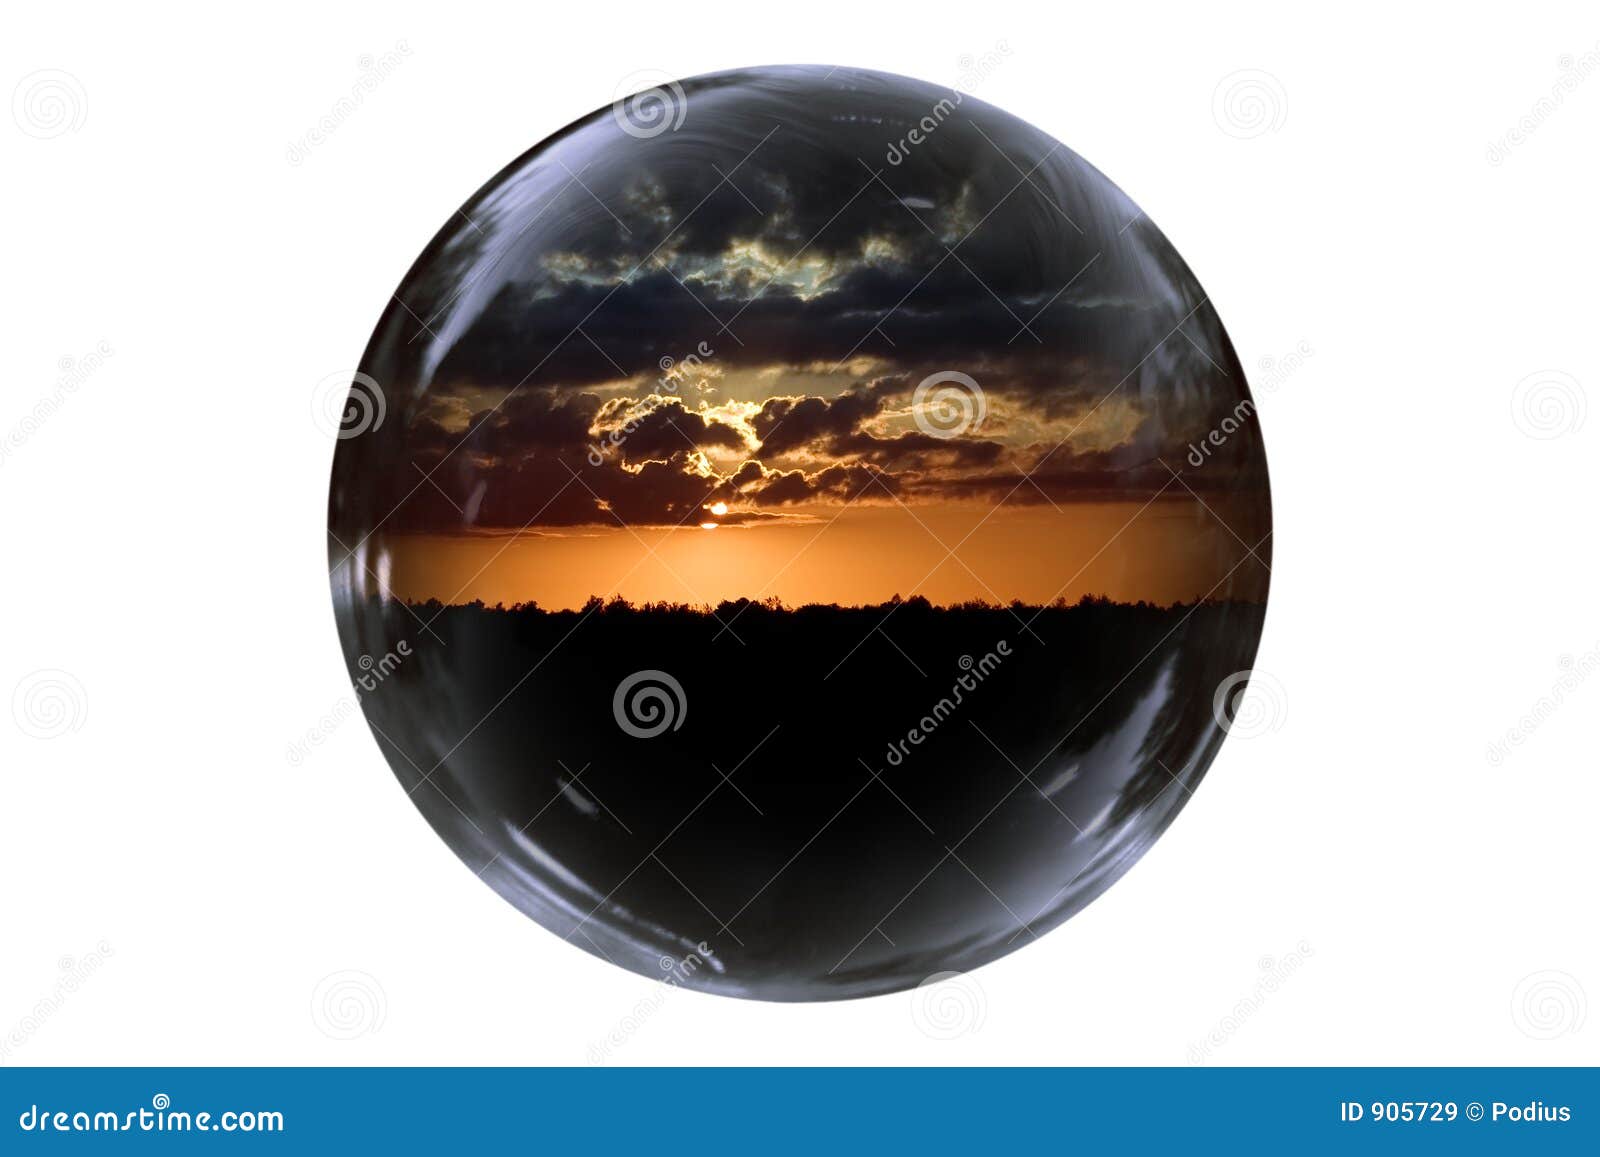 Floating Sunset stock image. Image of bubble, furry, nature - 905729